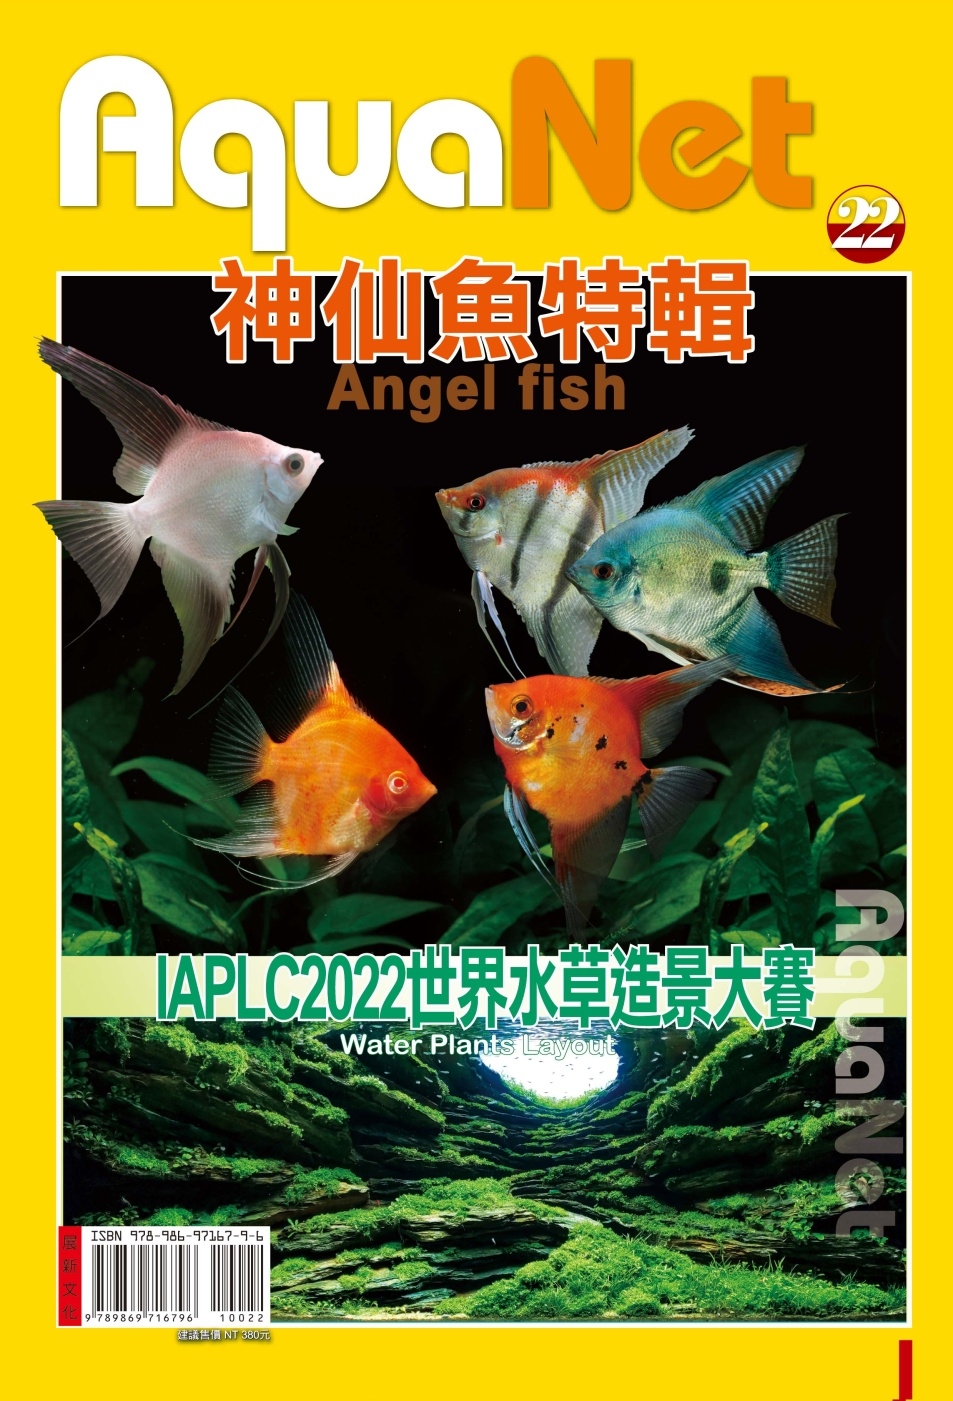 AquaNet No.22 神仙魚特輯& IAPLC 202...